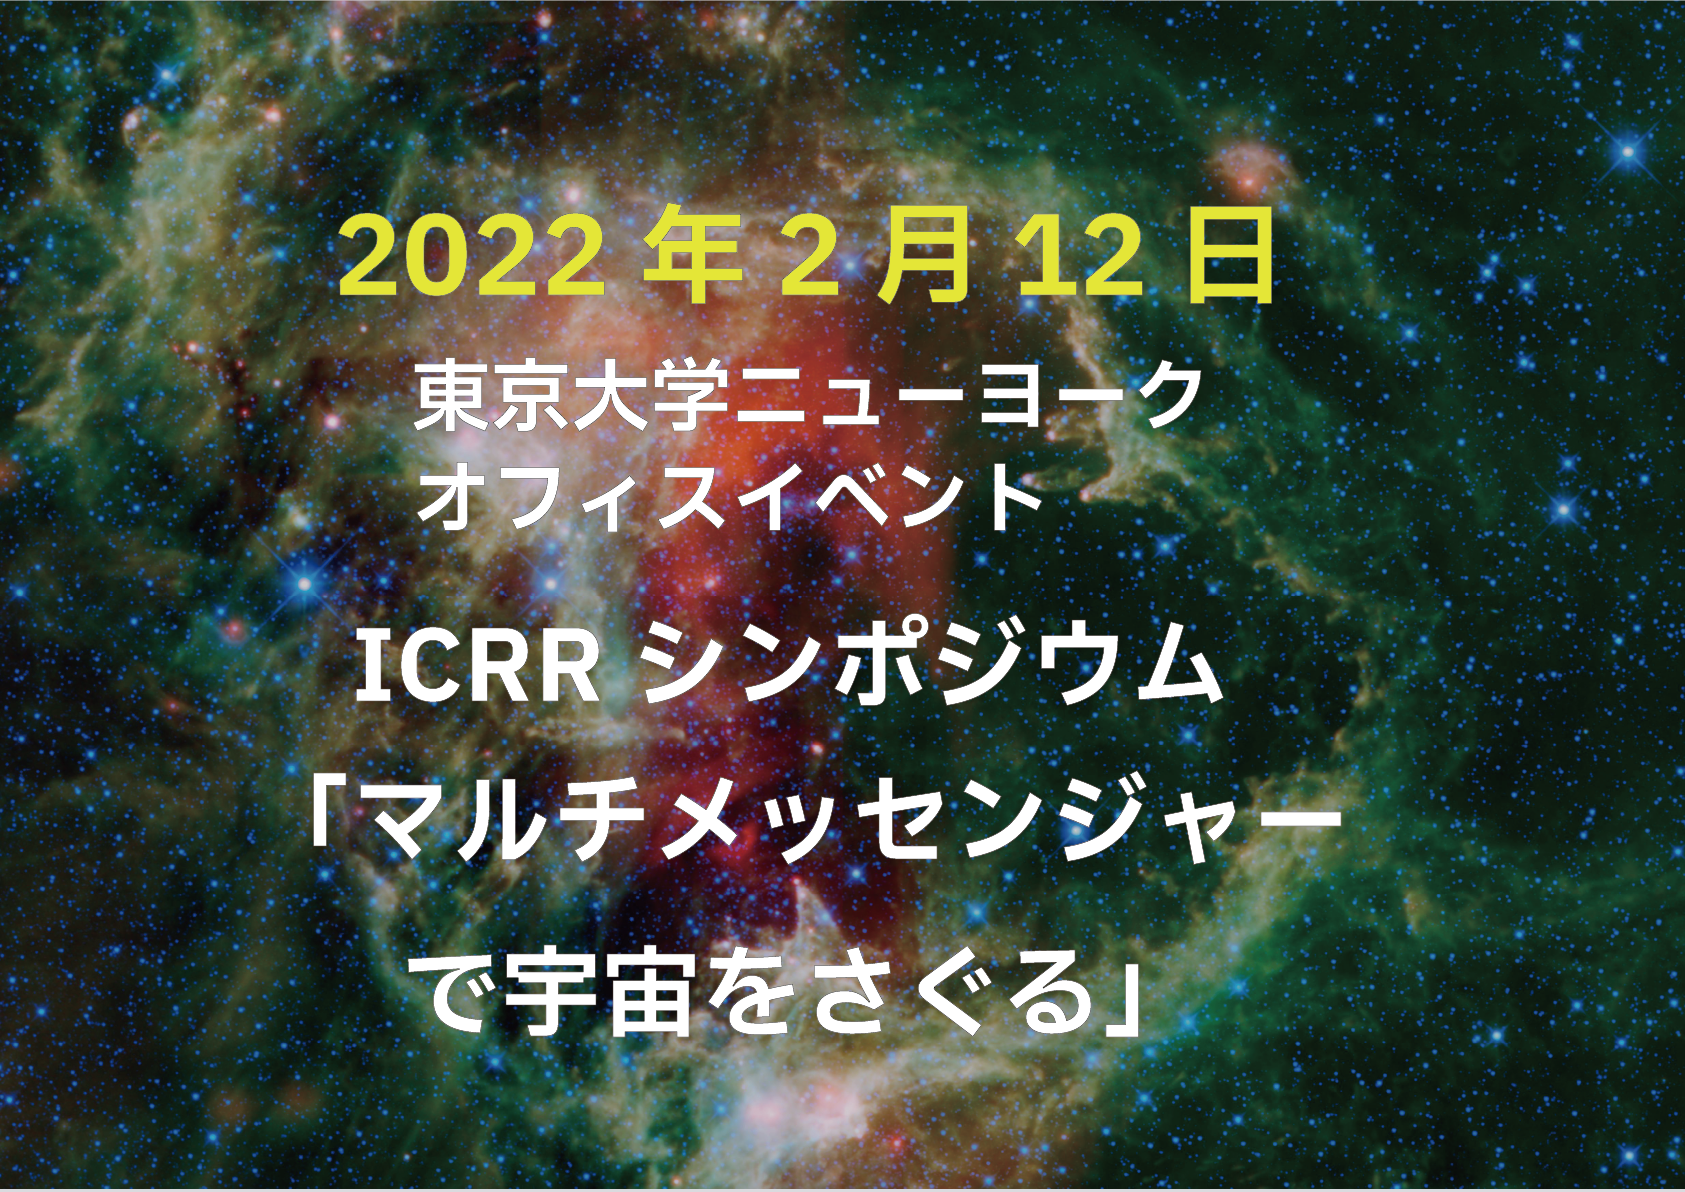 イベントレポート掲載 シンポジウム マルチメッセンジャーで宇宙をさぐる Icrr Institute For Cosmic Ray Research University Of Tokyo